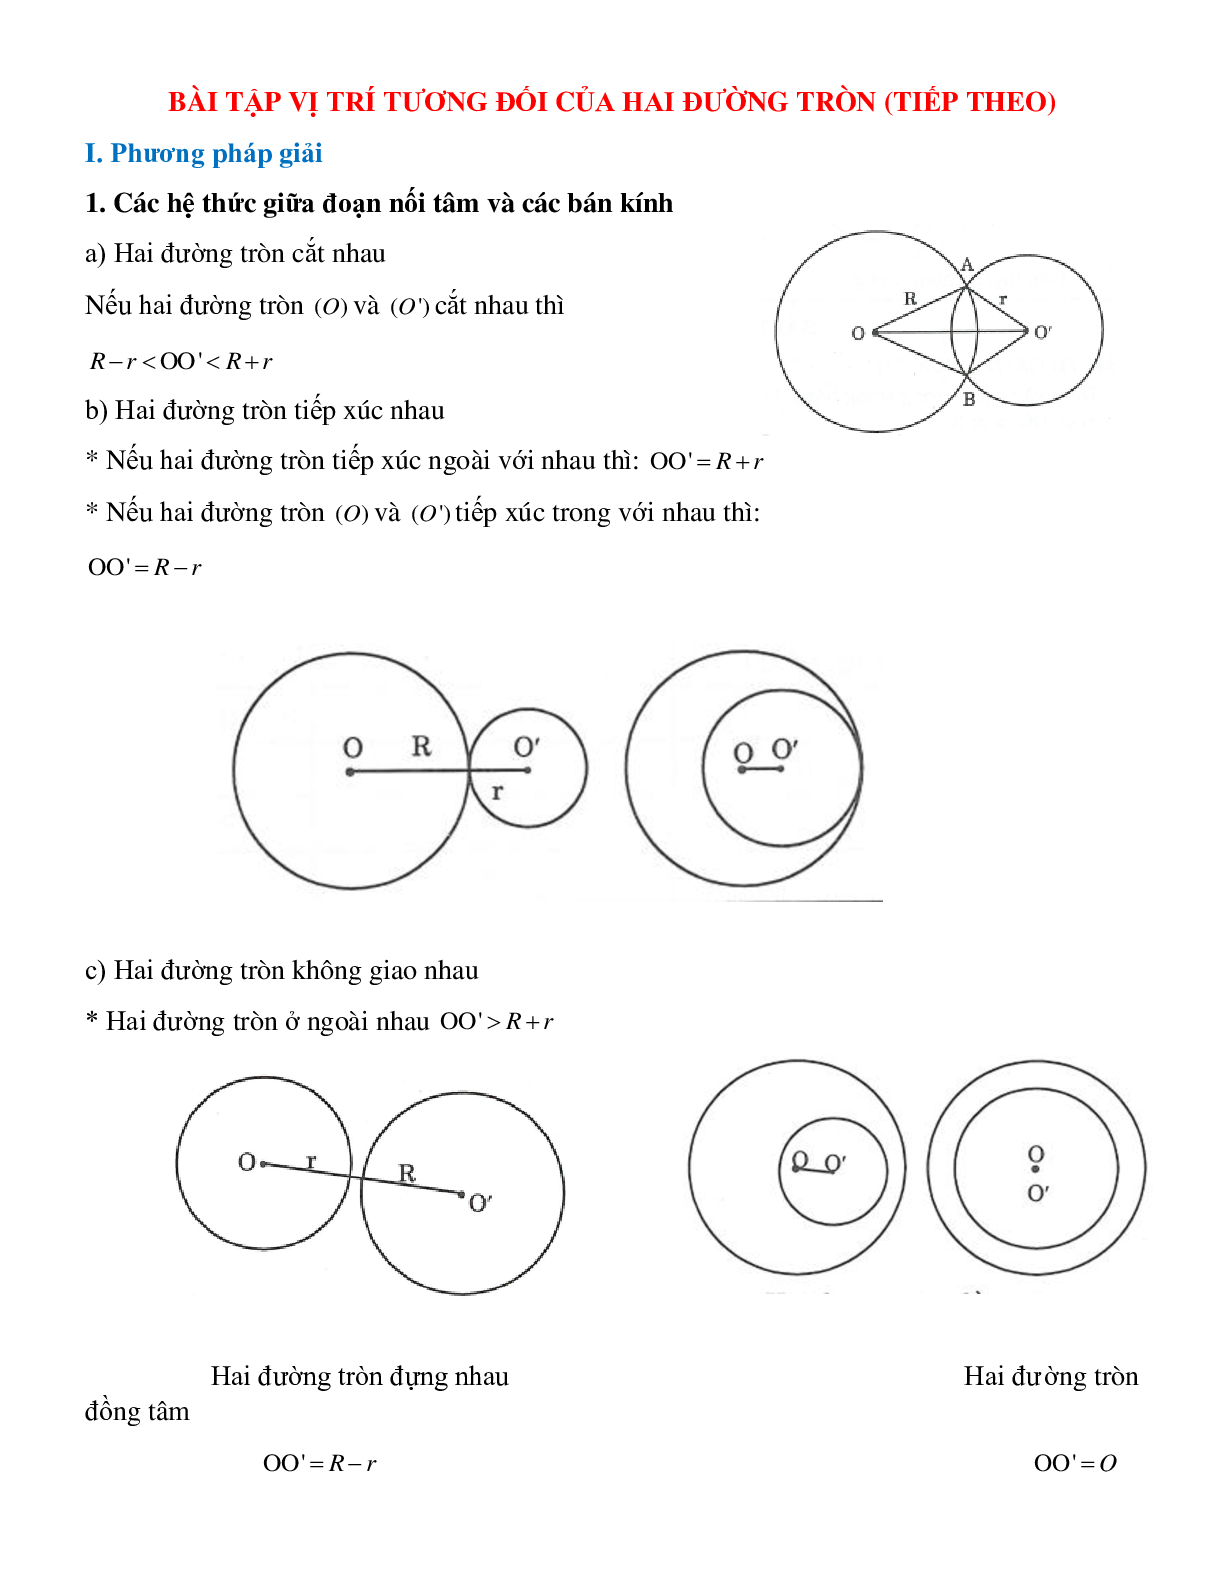 Bài tập về vị trí tương đối của hai đường tròn (tiếp theo) có đáp án (trang 1)